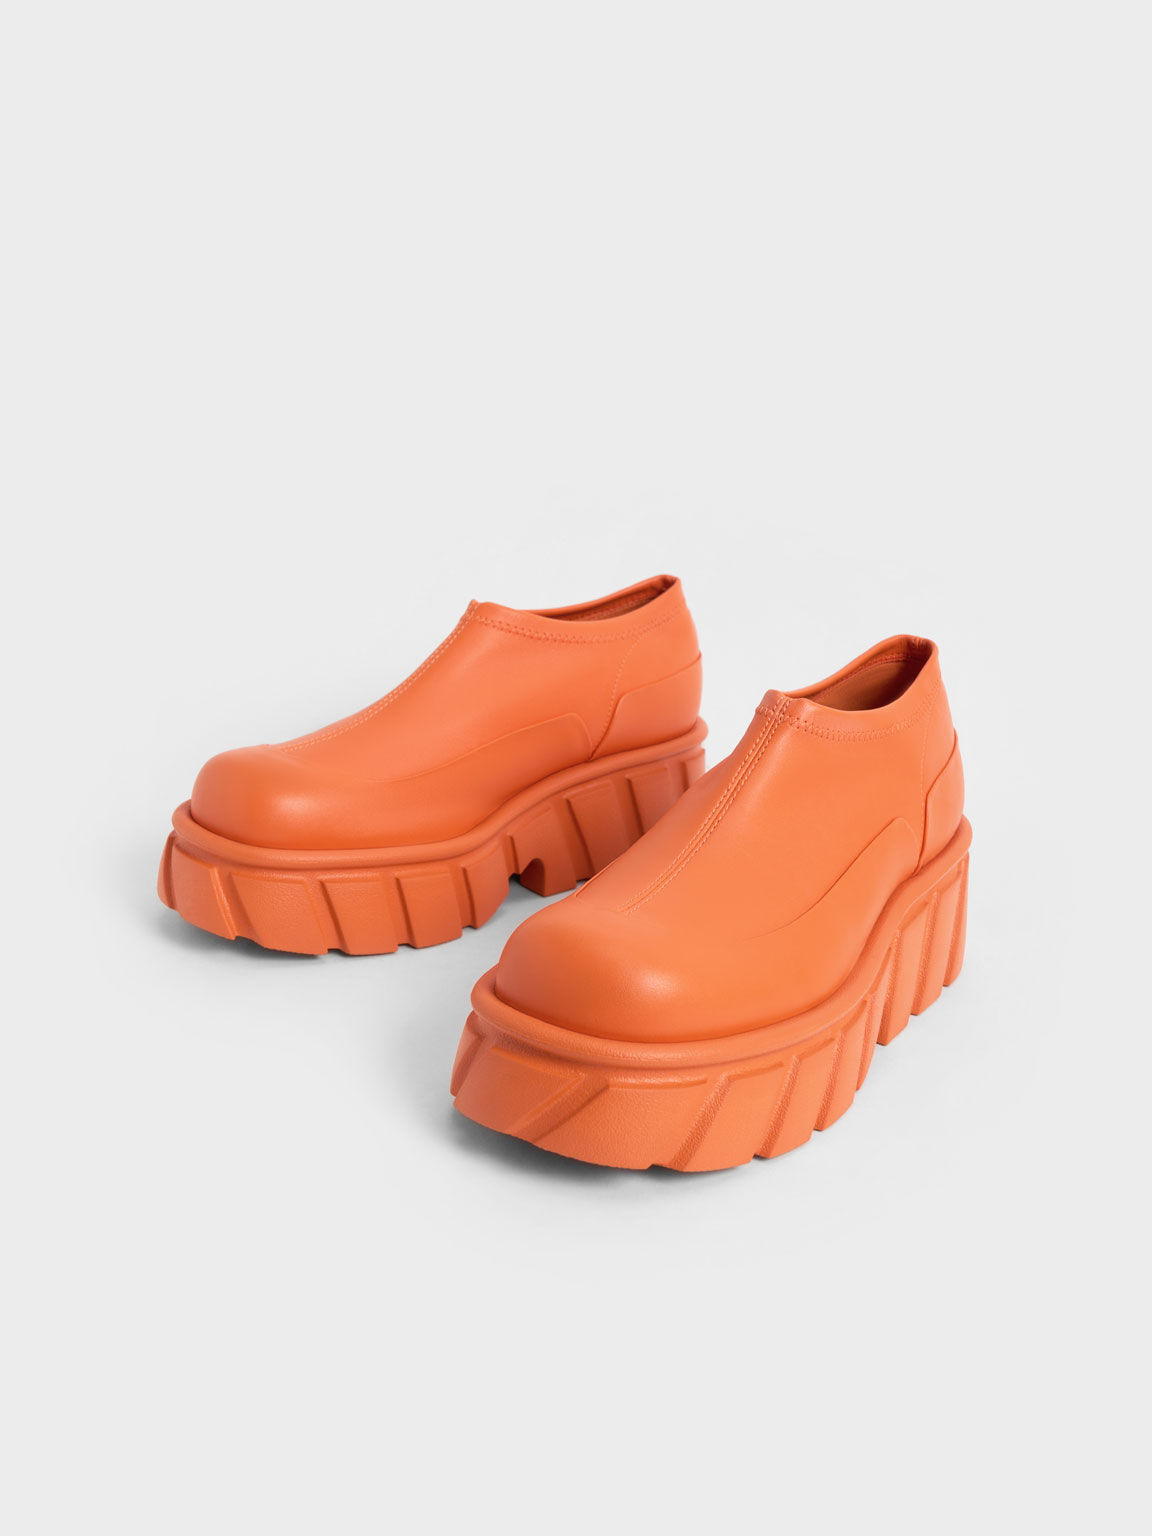 Aberdeen Slip-On Sneakers, Orange, hi-res